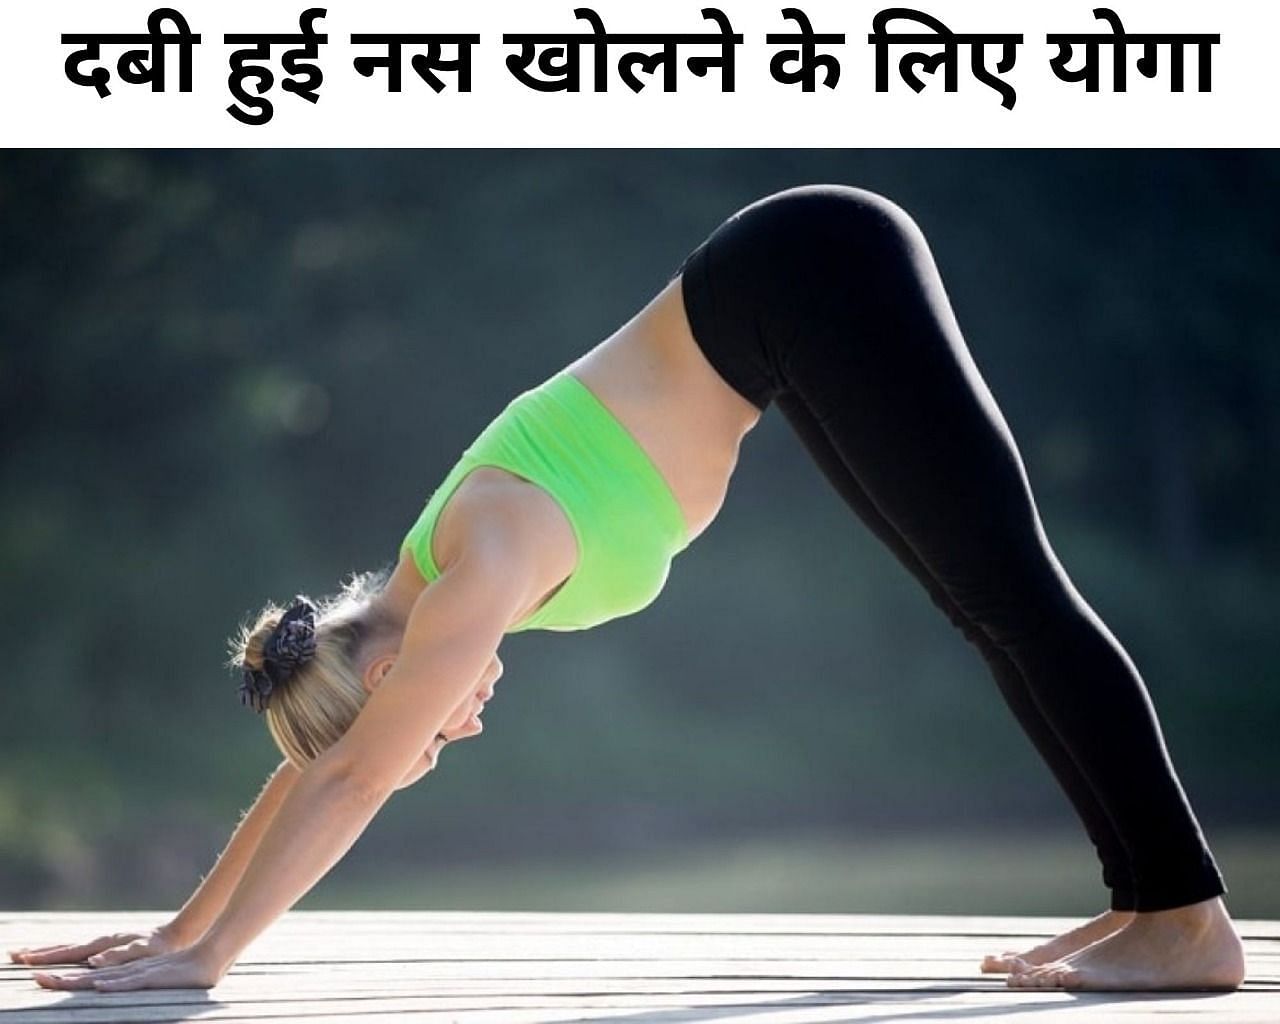 दबी हुई नस खोलने के लिए योगा (फोटो - sportskeeda hindi)